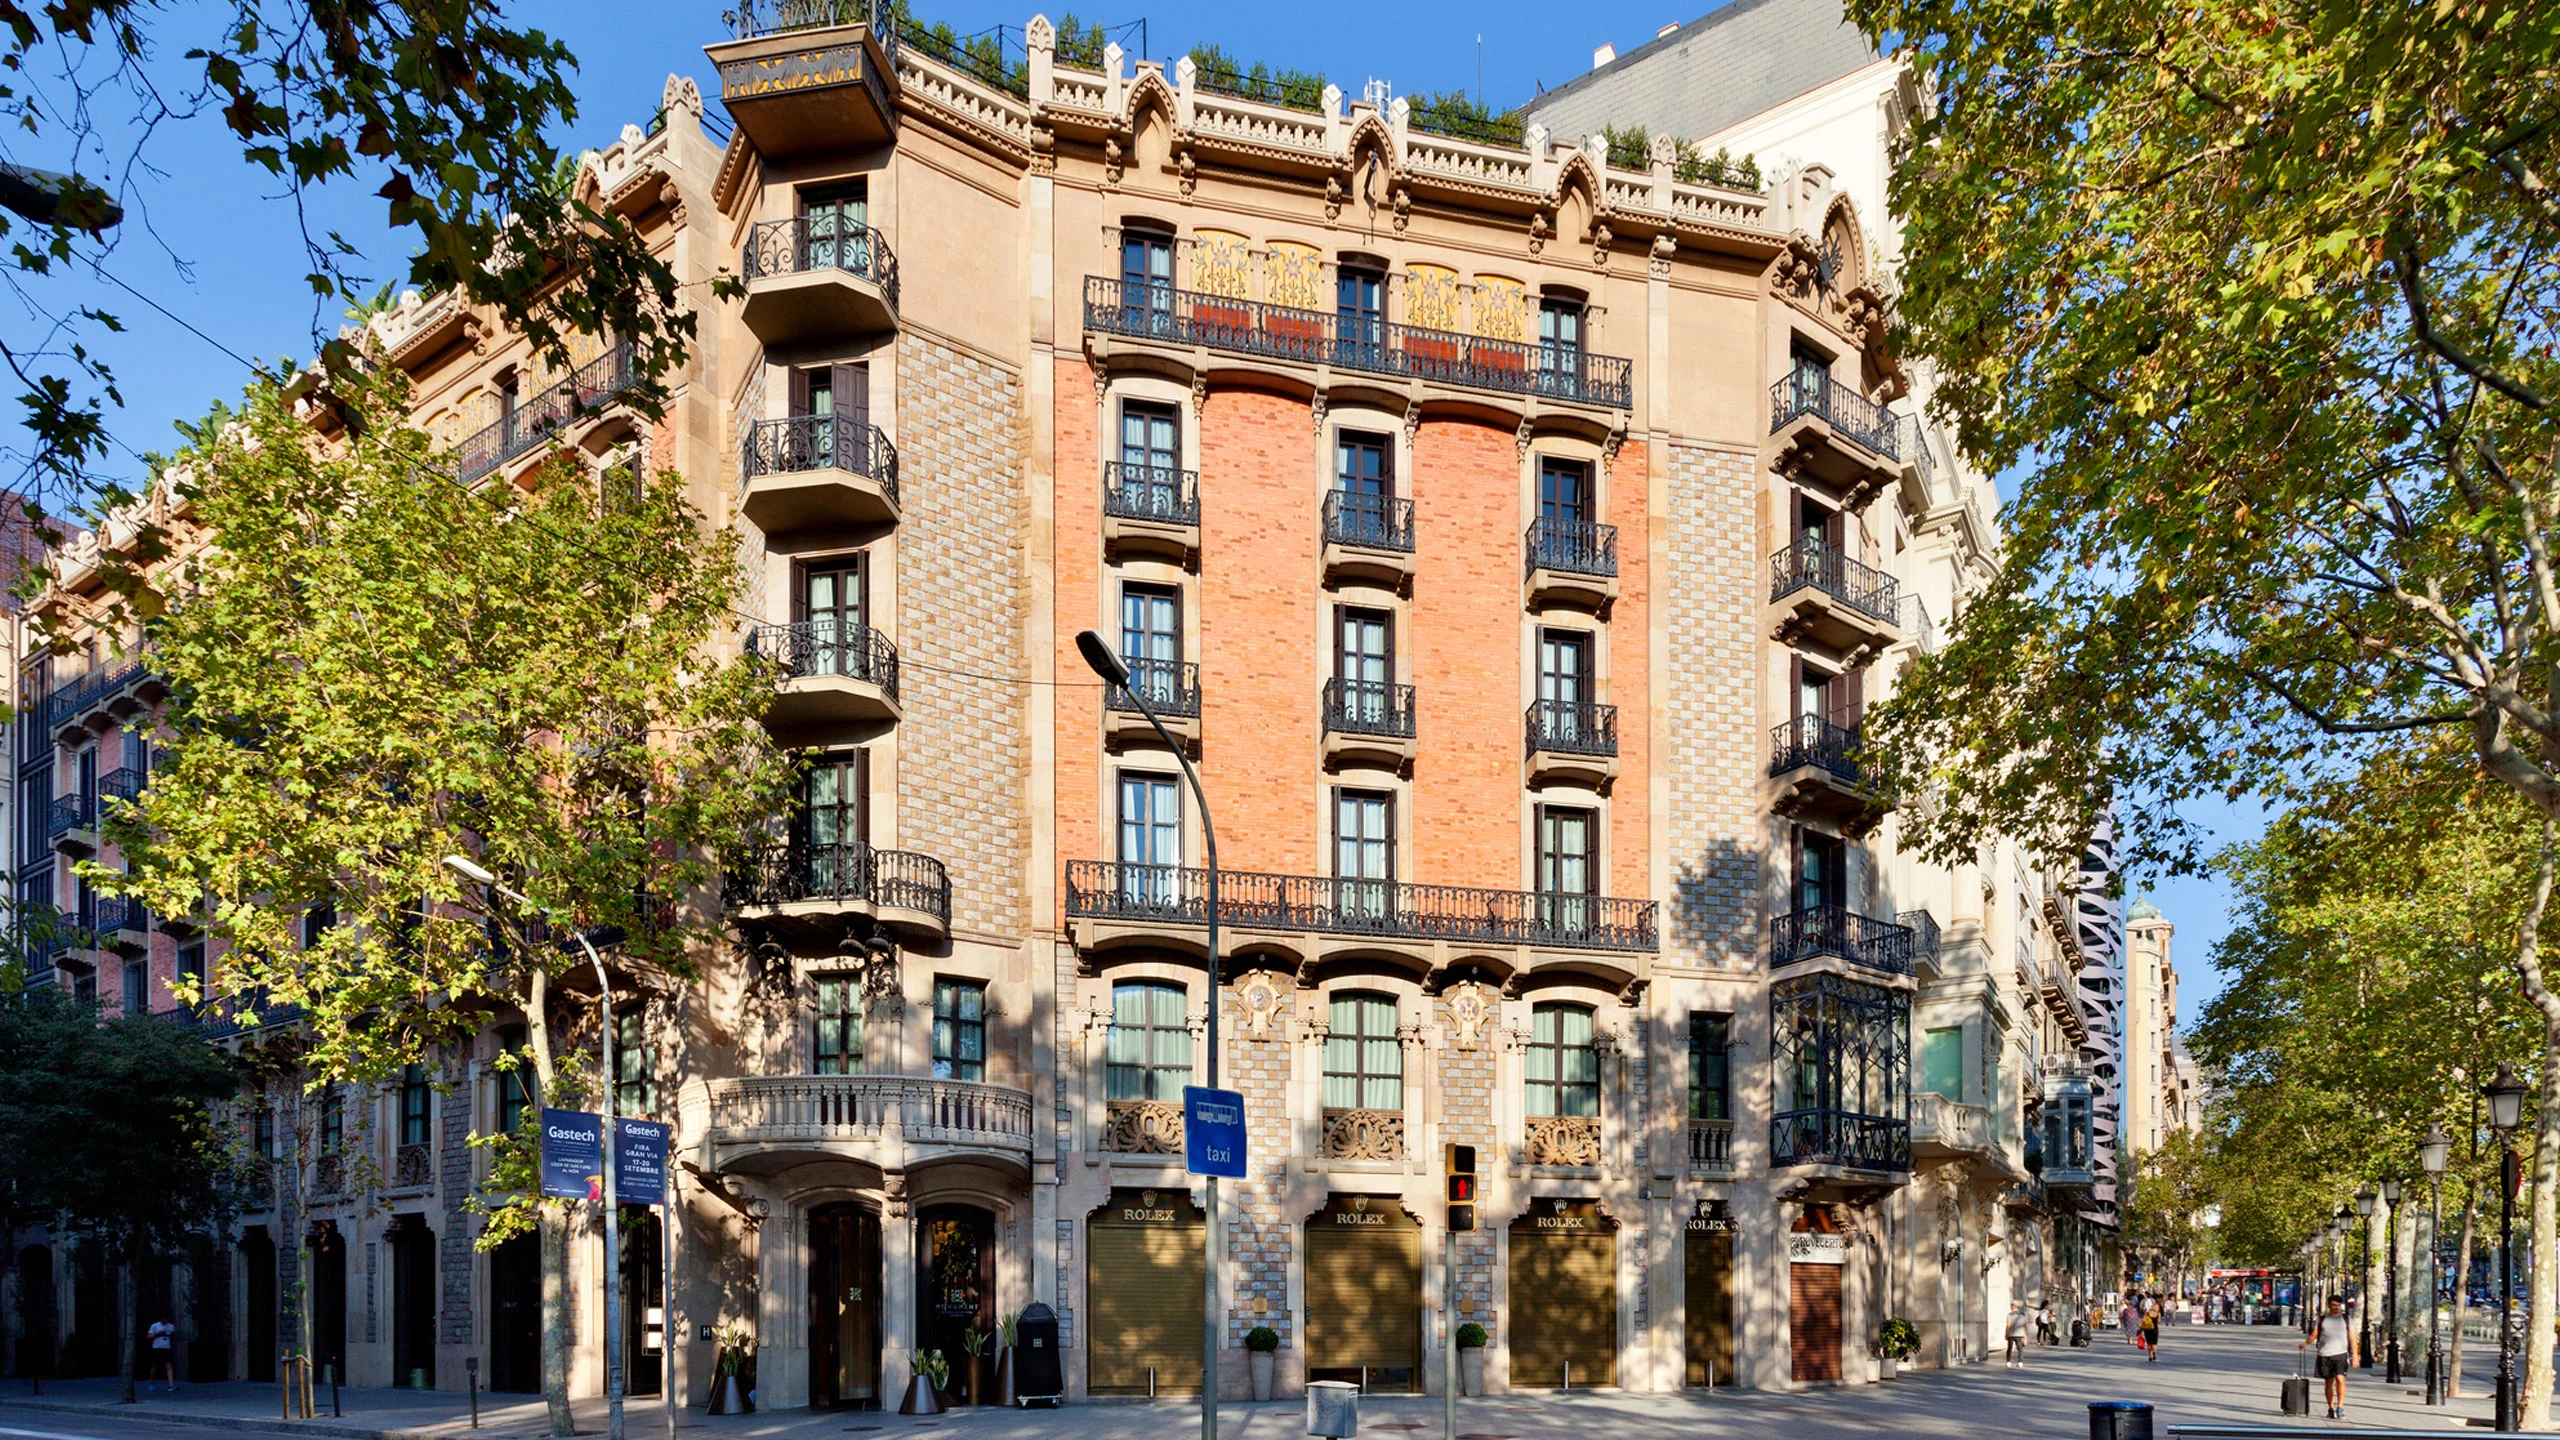 Monument es el único hotel de España con cuatro estrellas Michelin